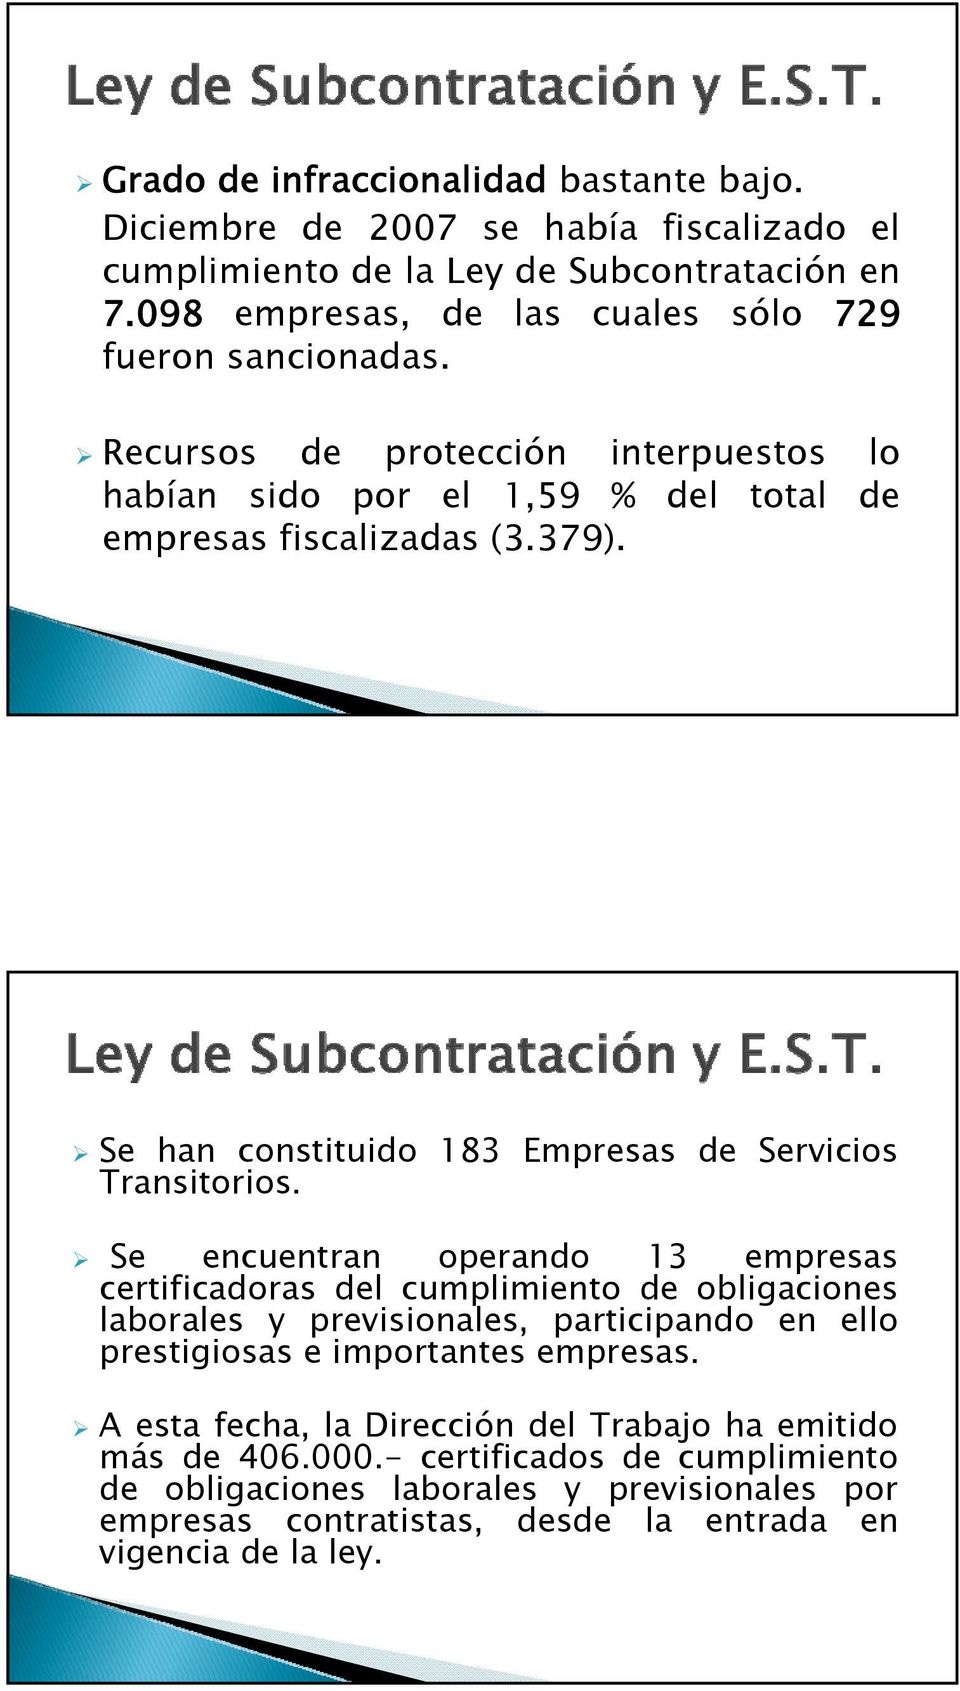 Se han constituido 183 Empresas de Servicios Transitorios.